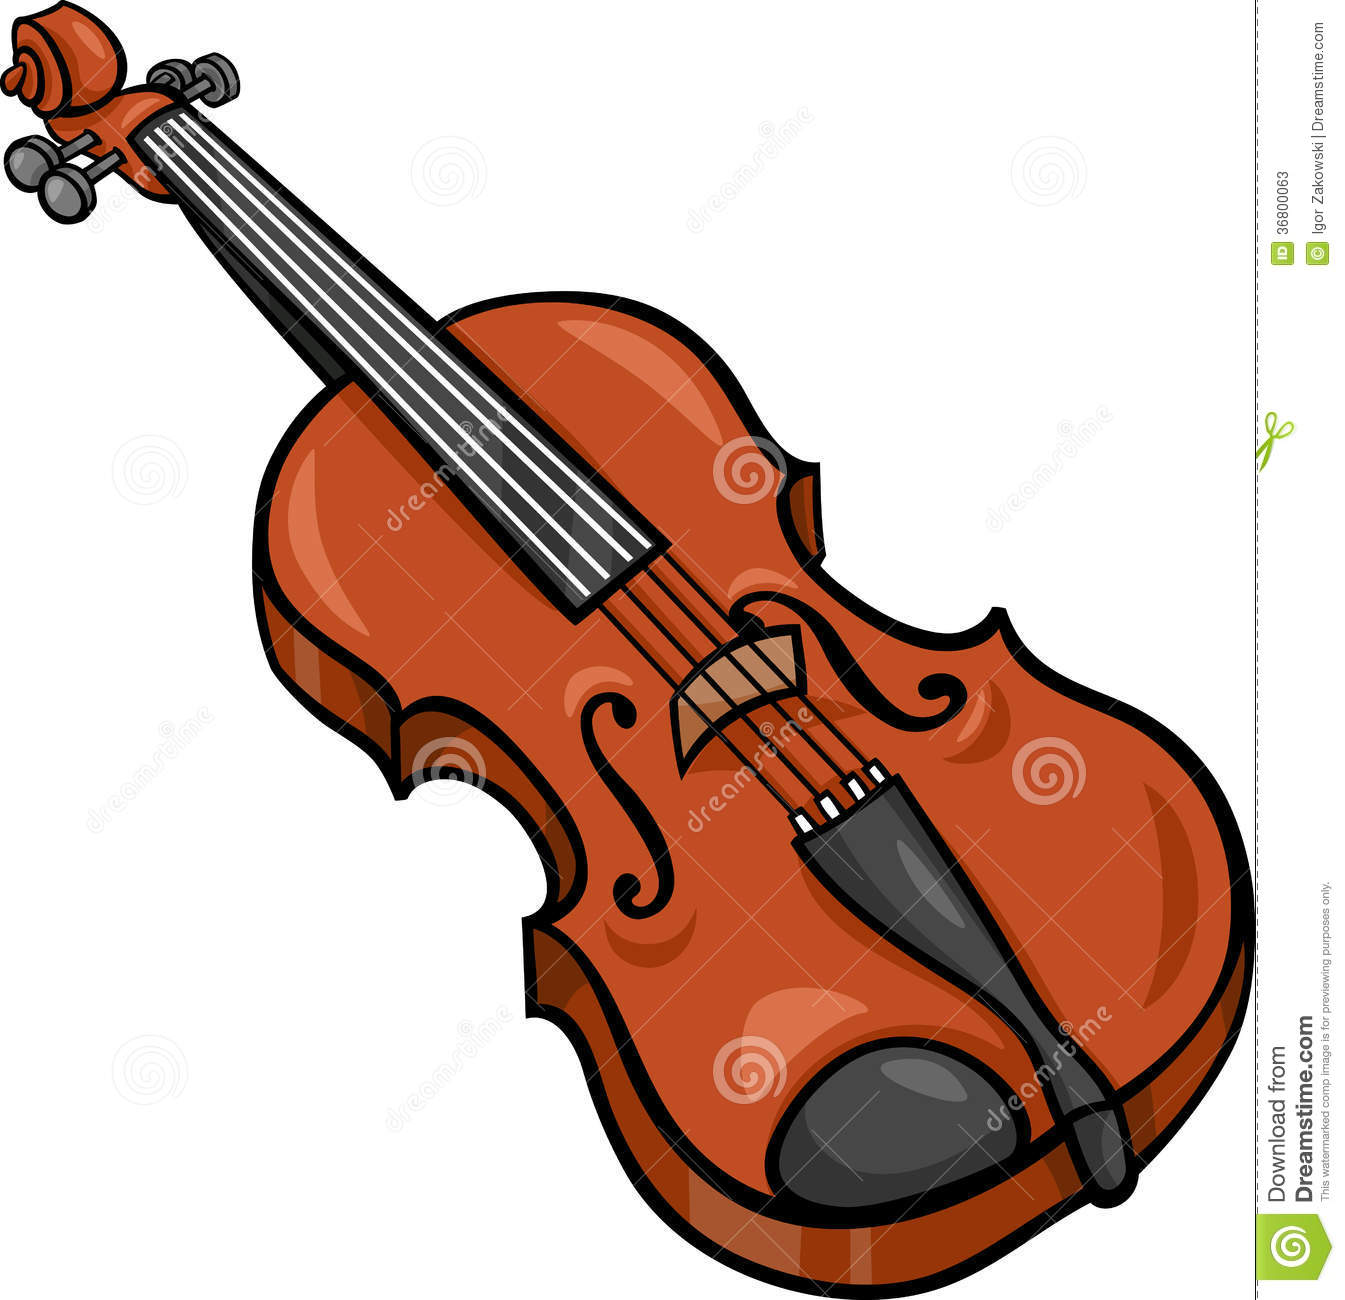 Violin Cartoon Illustration Clip Art Stock Photos.